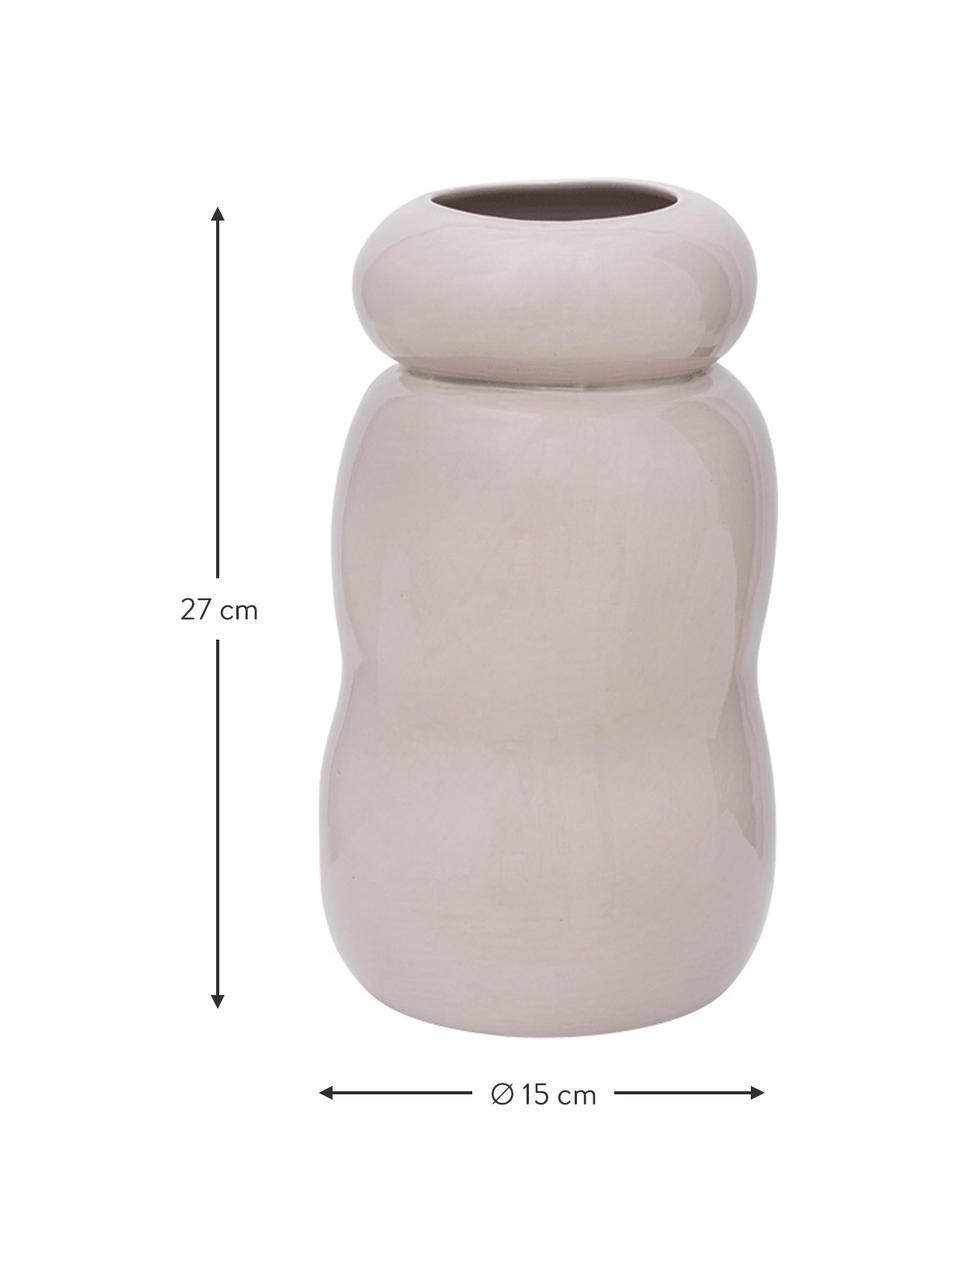 Handgefertigte Steingut-Vase Pebbles in Taupe, Steingut, Taupe, glänzend, Ø 15 x H 27 cm